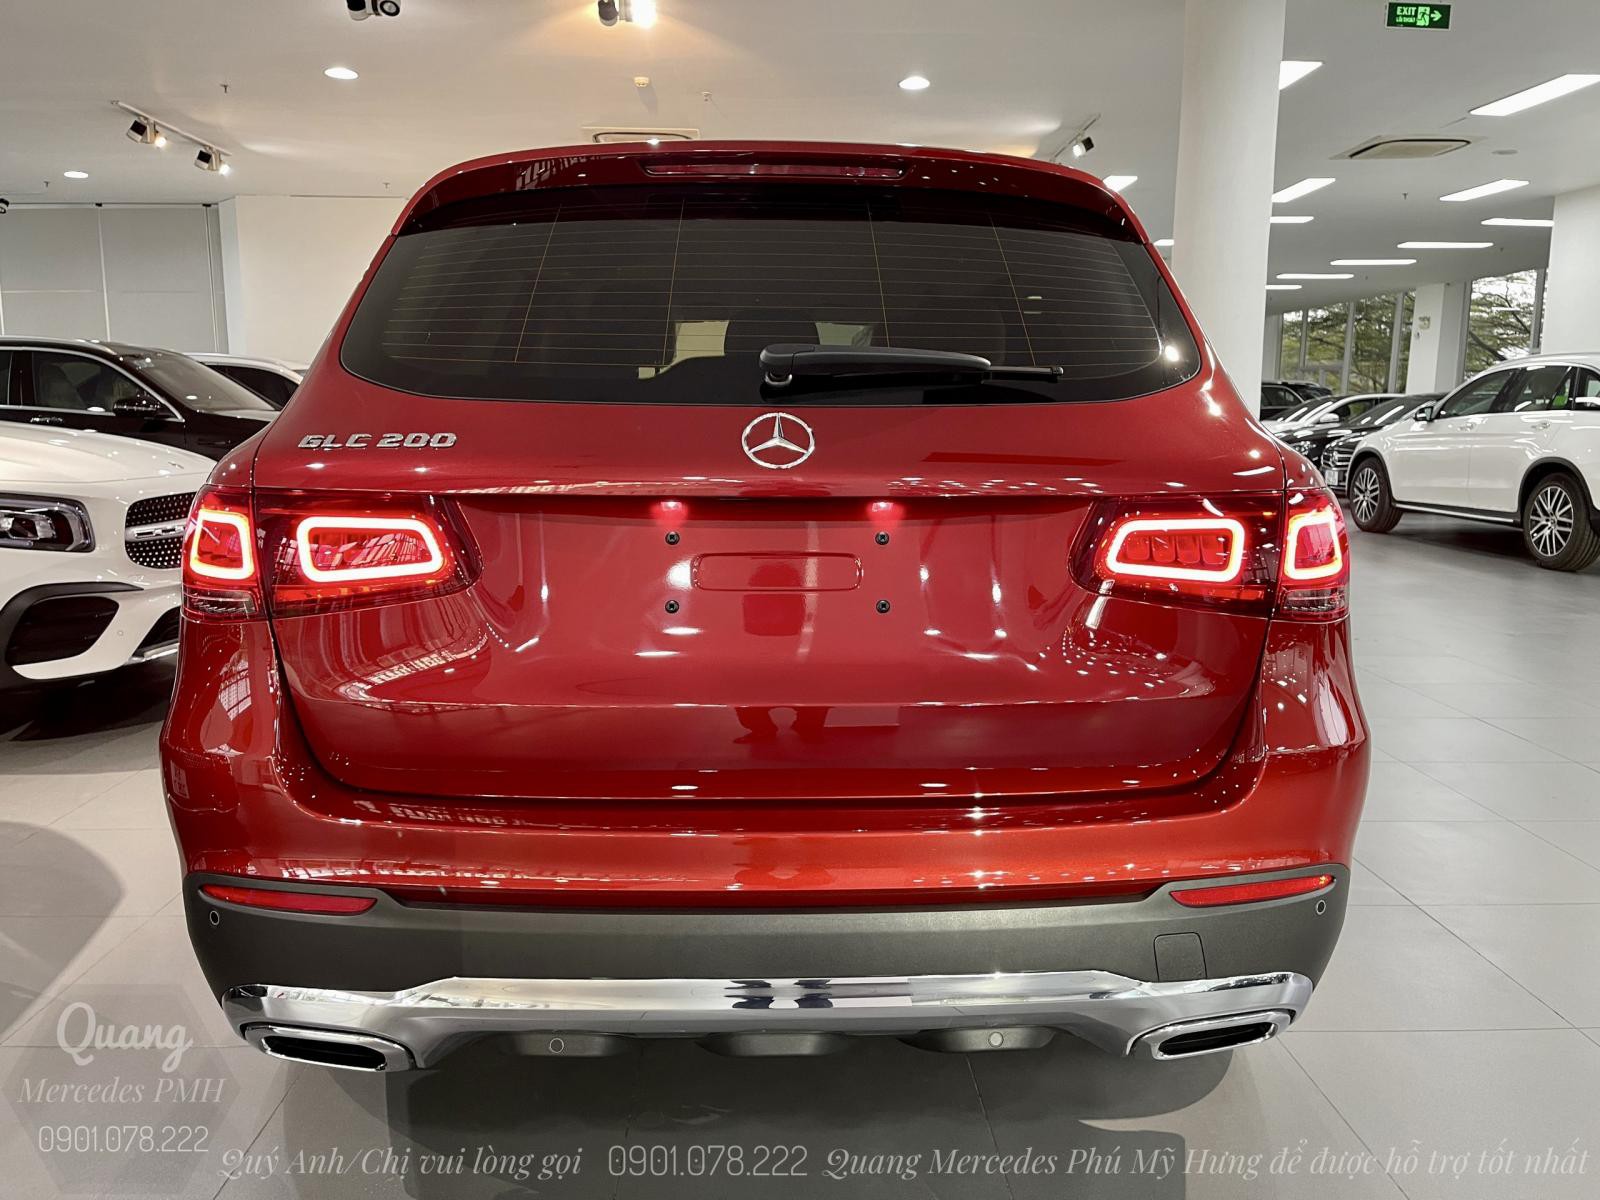 Mercedes GLC200 Màu Đỏ Giao Liền Quận Tân Bình . Hỗ trợ 80% | Lãi suất ưu đãi. Quang Mercedes Phú Mỹ Hưng